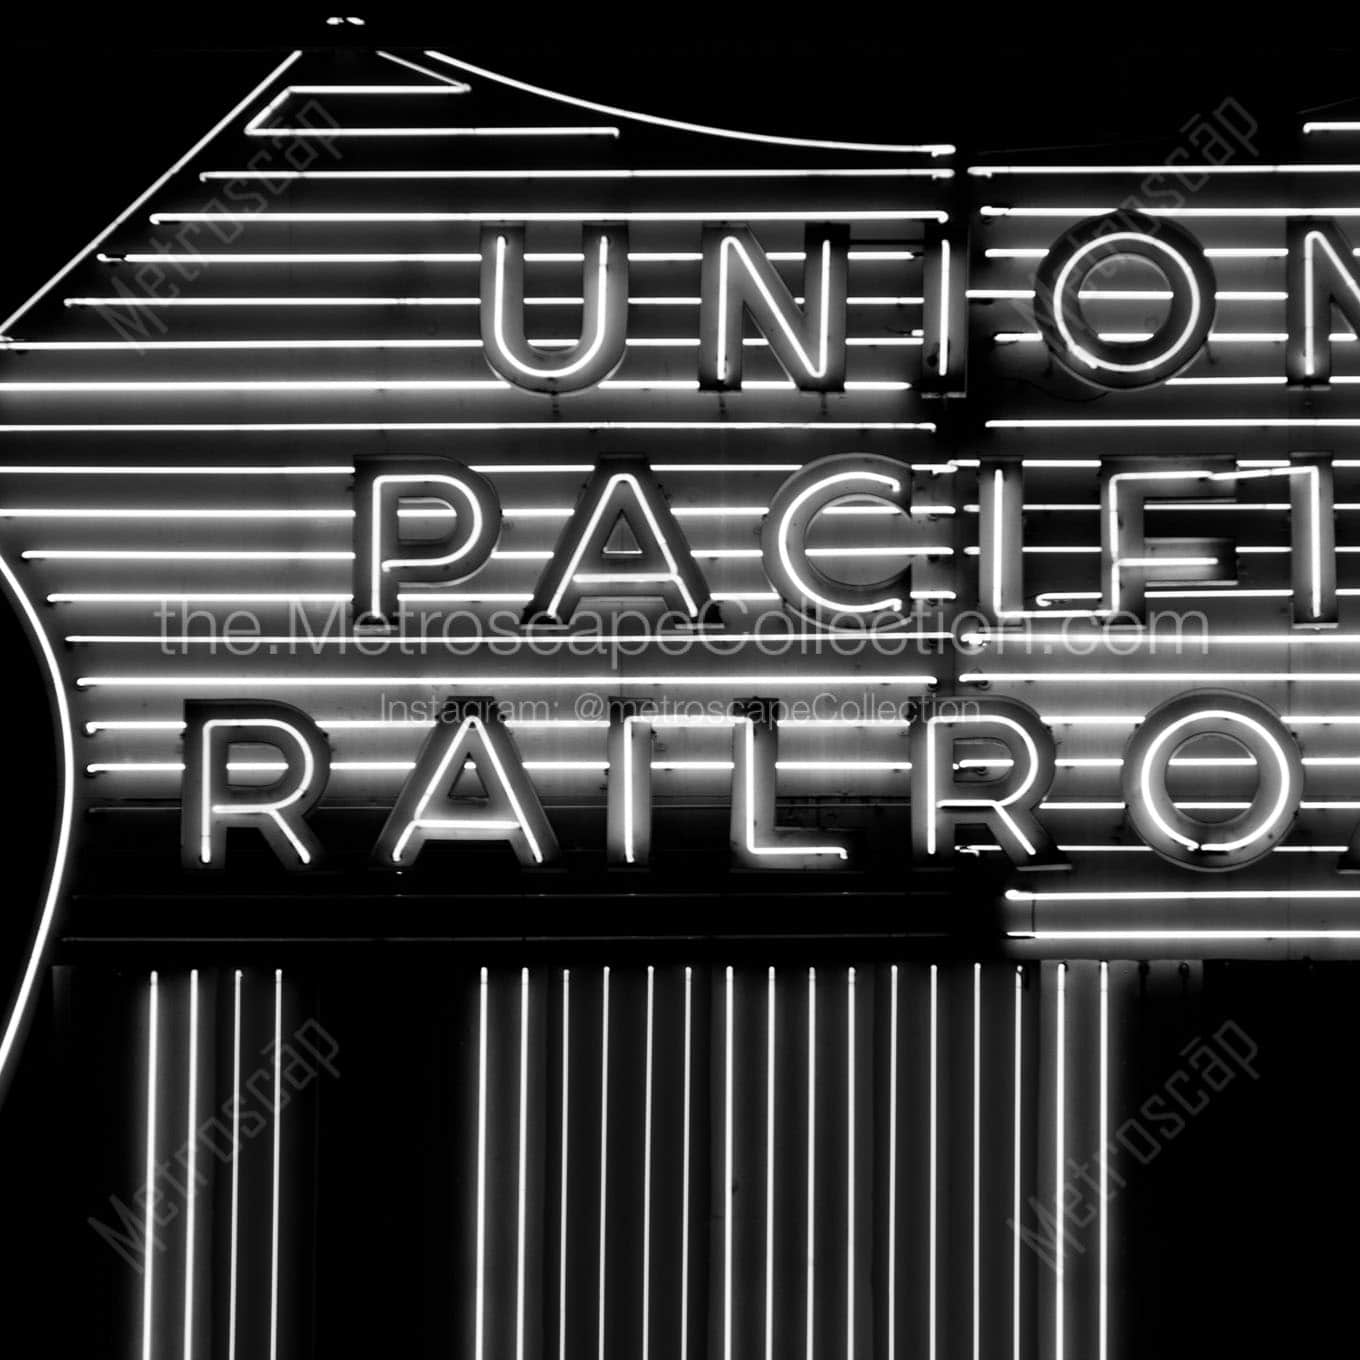 union pacific railroad sign Black & White Wall Art